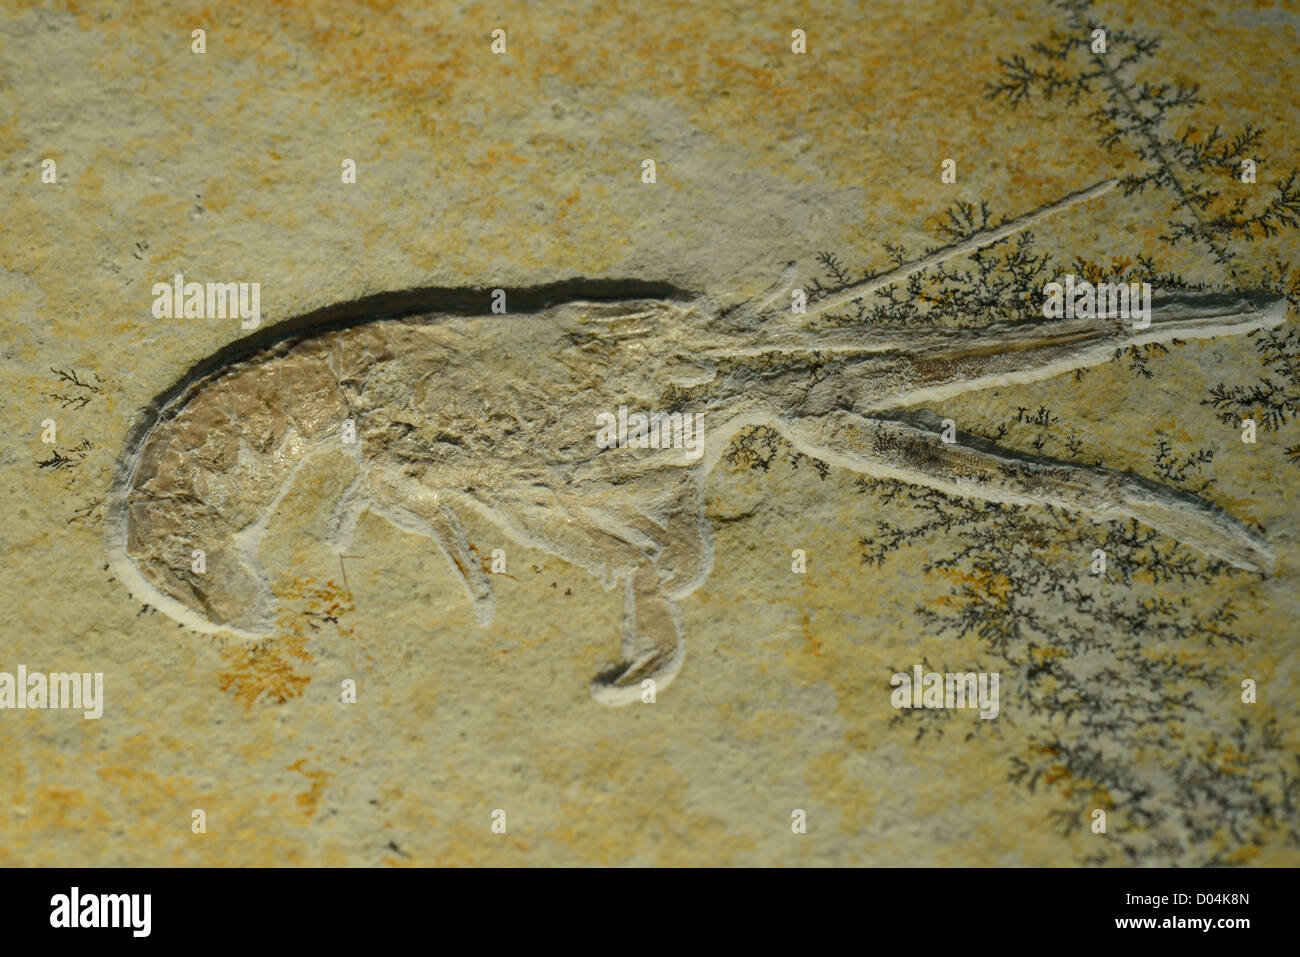 Ein Garnelen-Fossil in Kalkstein Matrix erhalten. Stockfoto